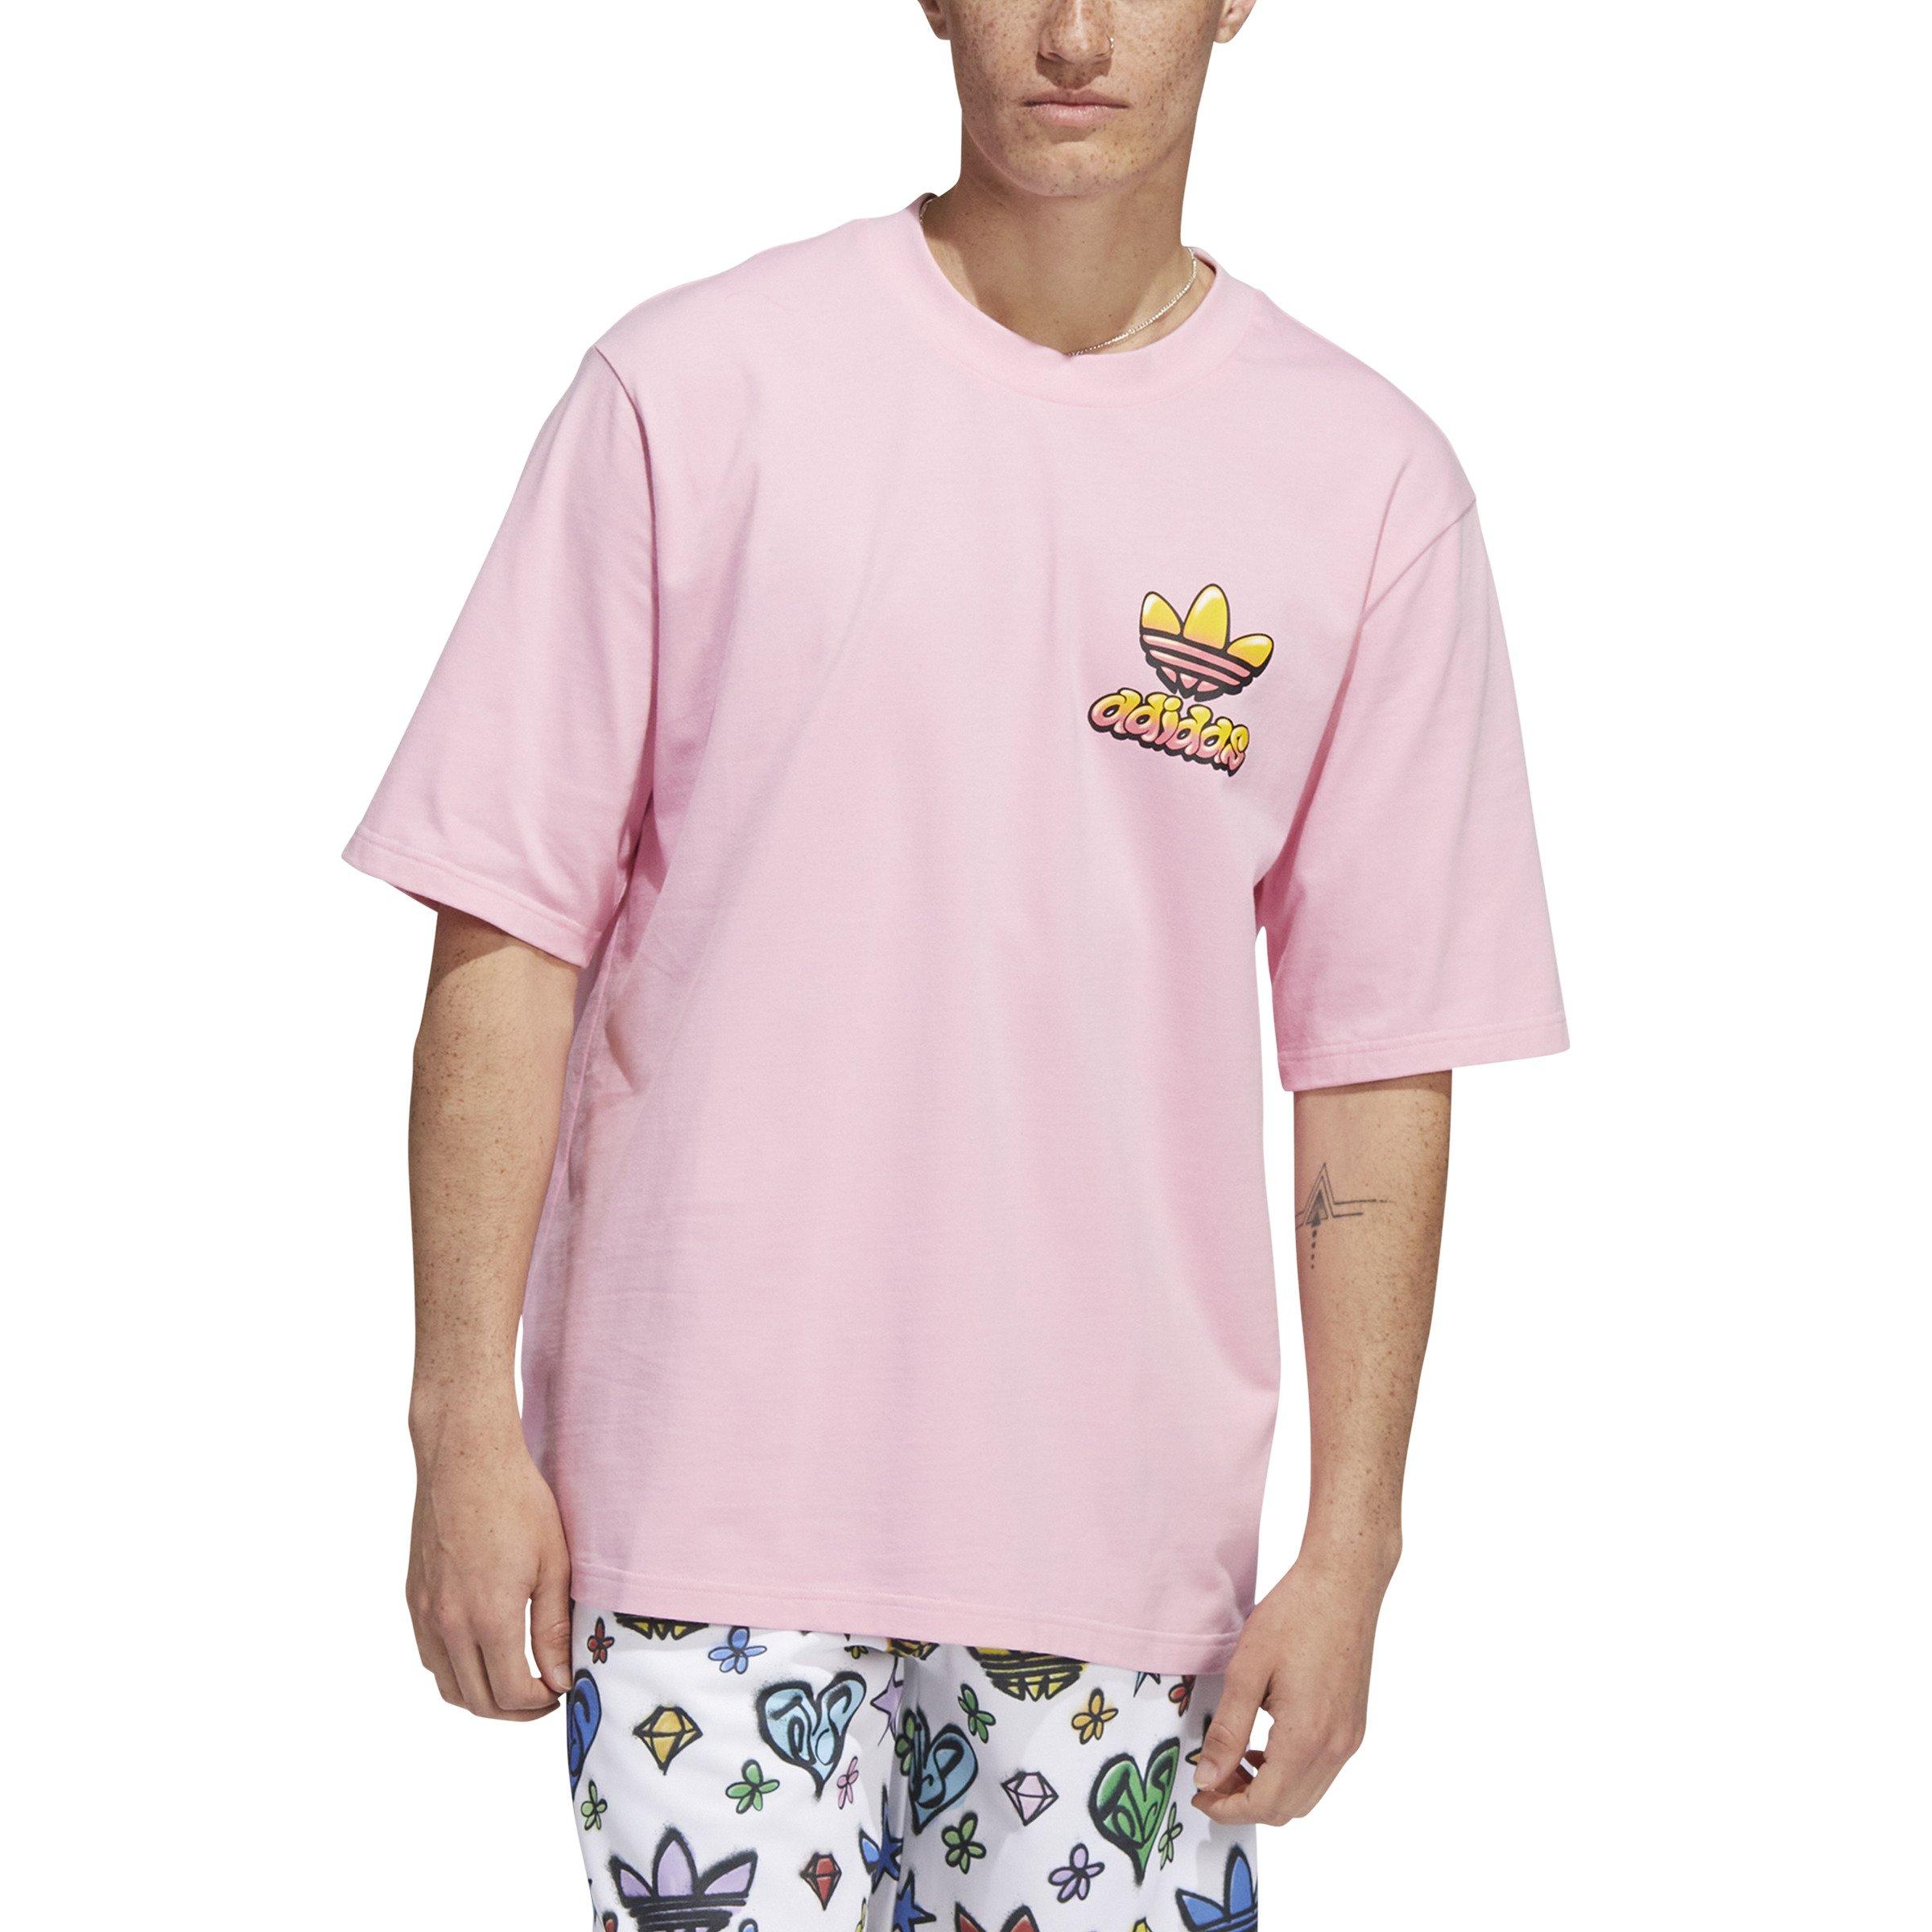 City Gear | Unisex T-Shirt Pink - adidas Hibbett - Jeremy Scott Originals